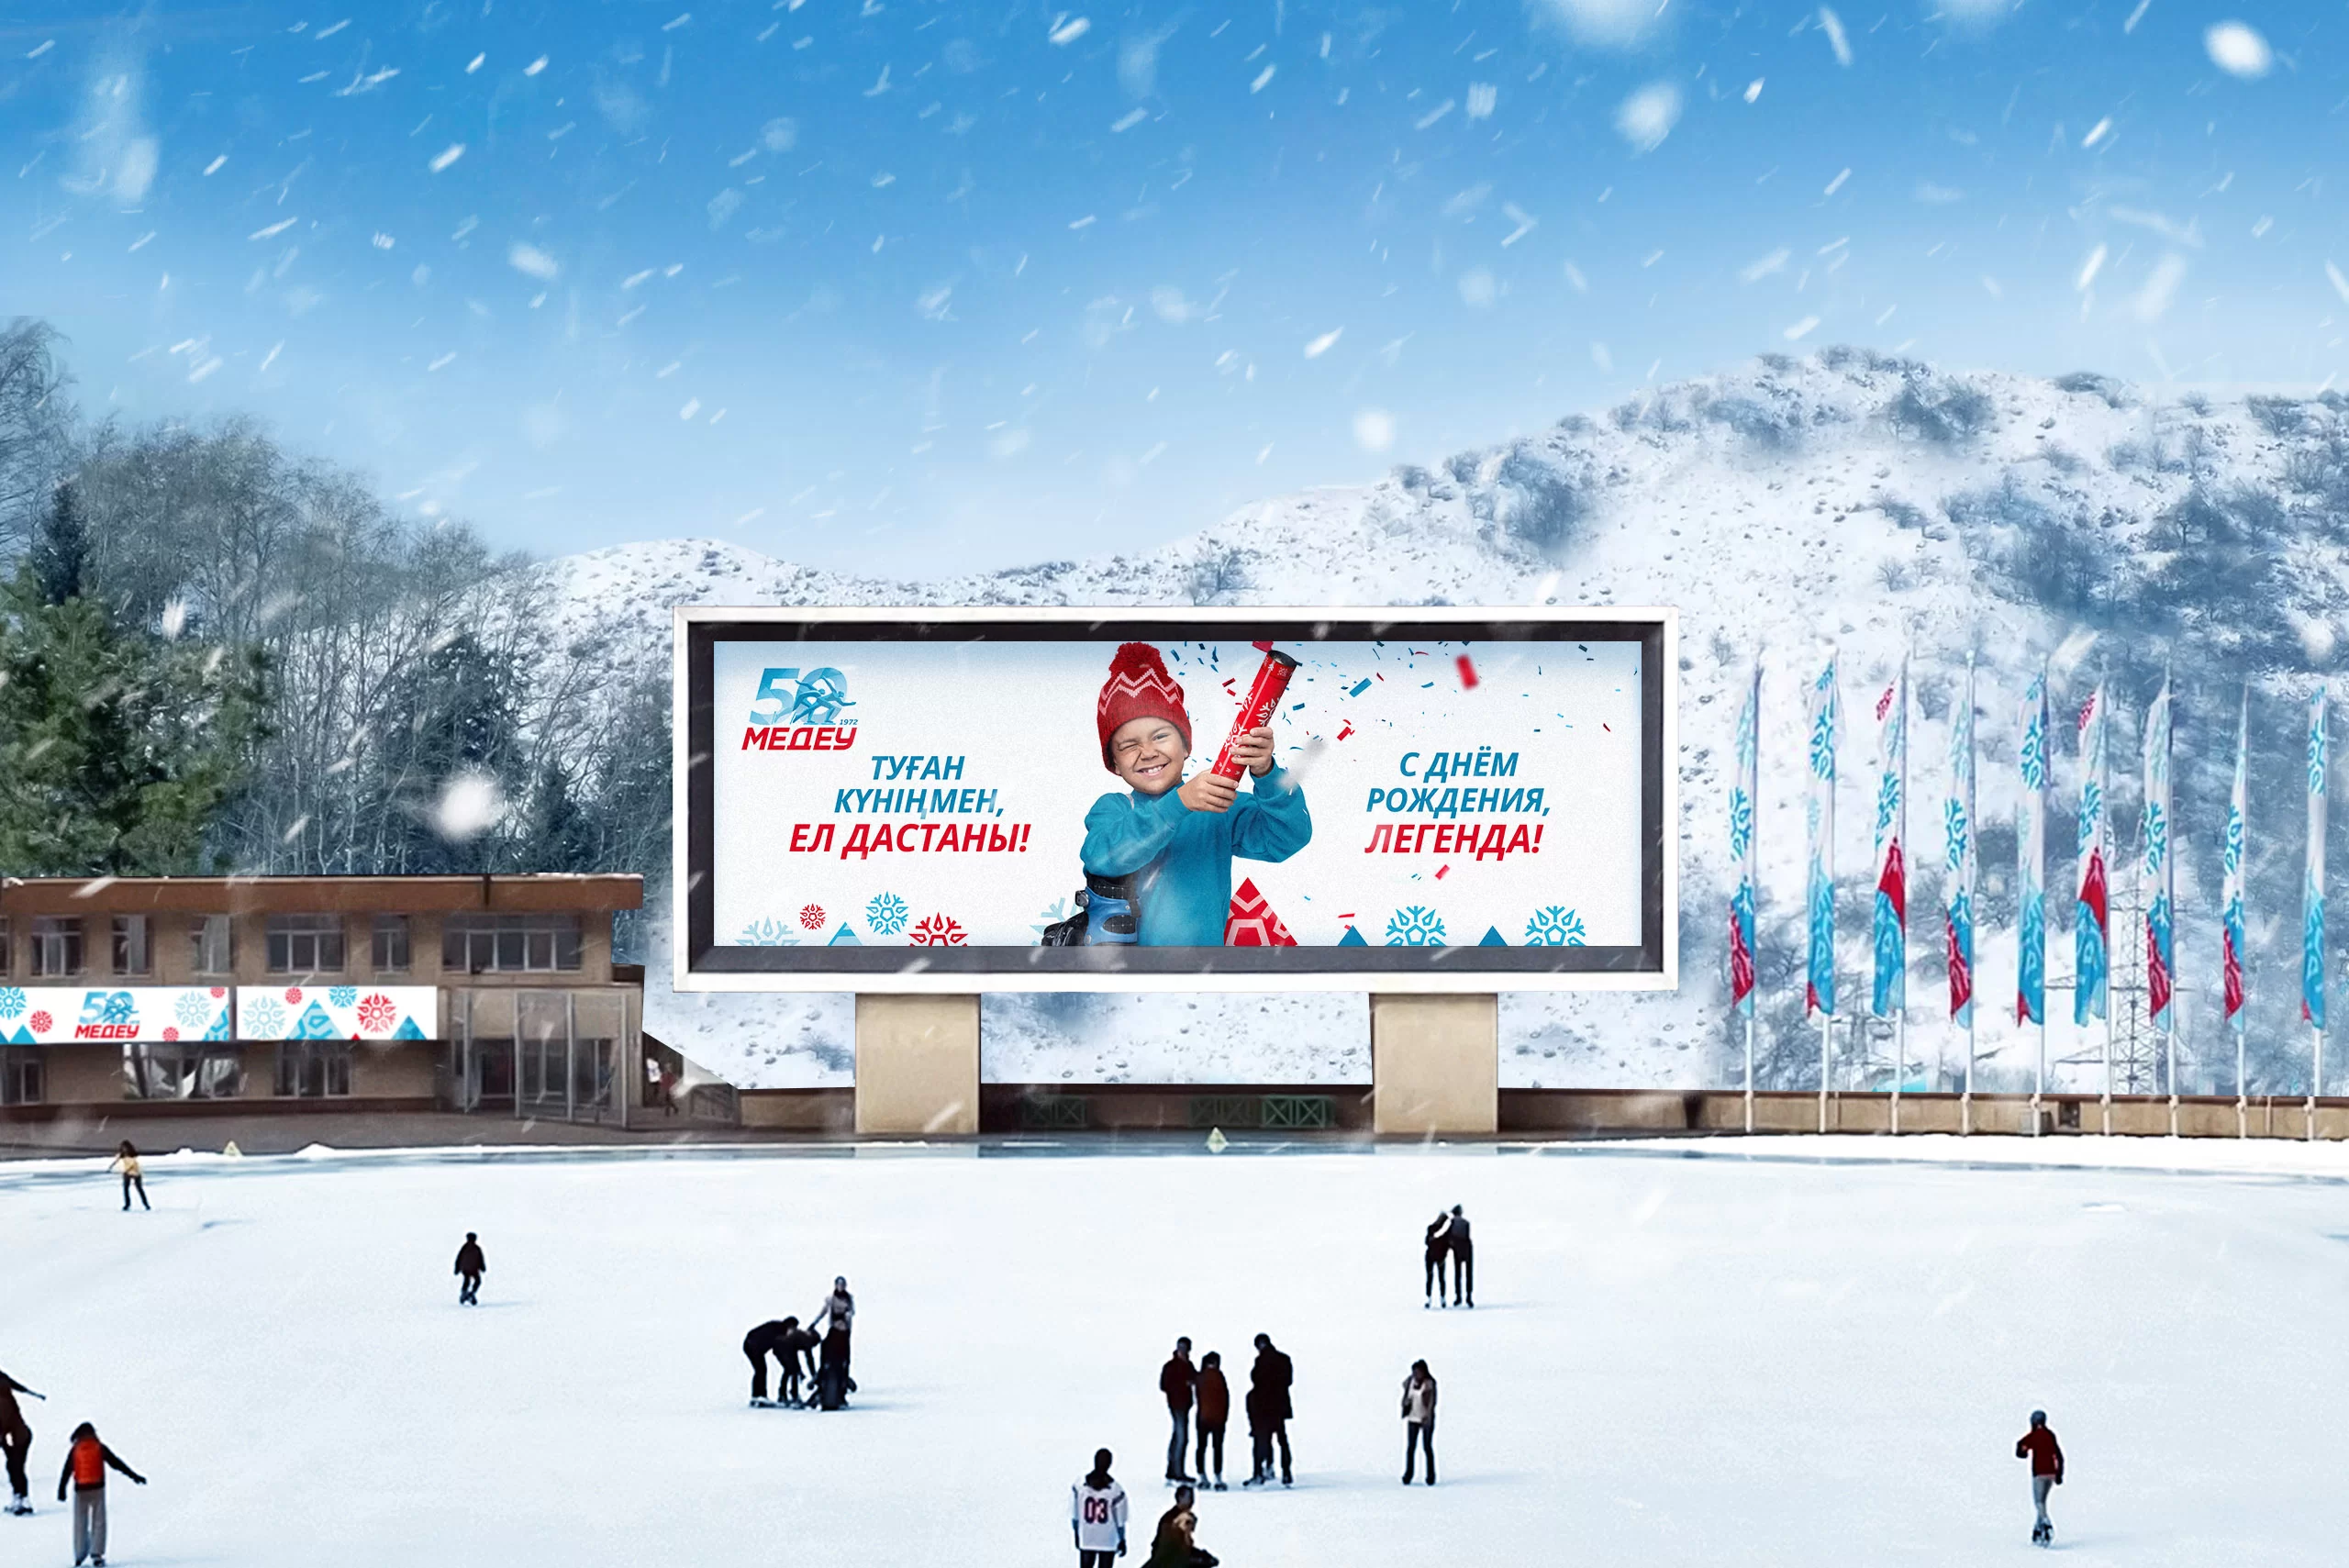 Реклама ледового катка  МЕДЕУ